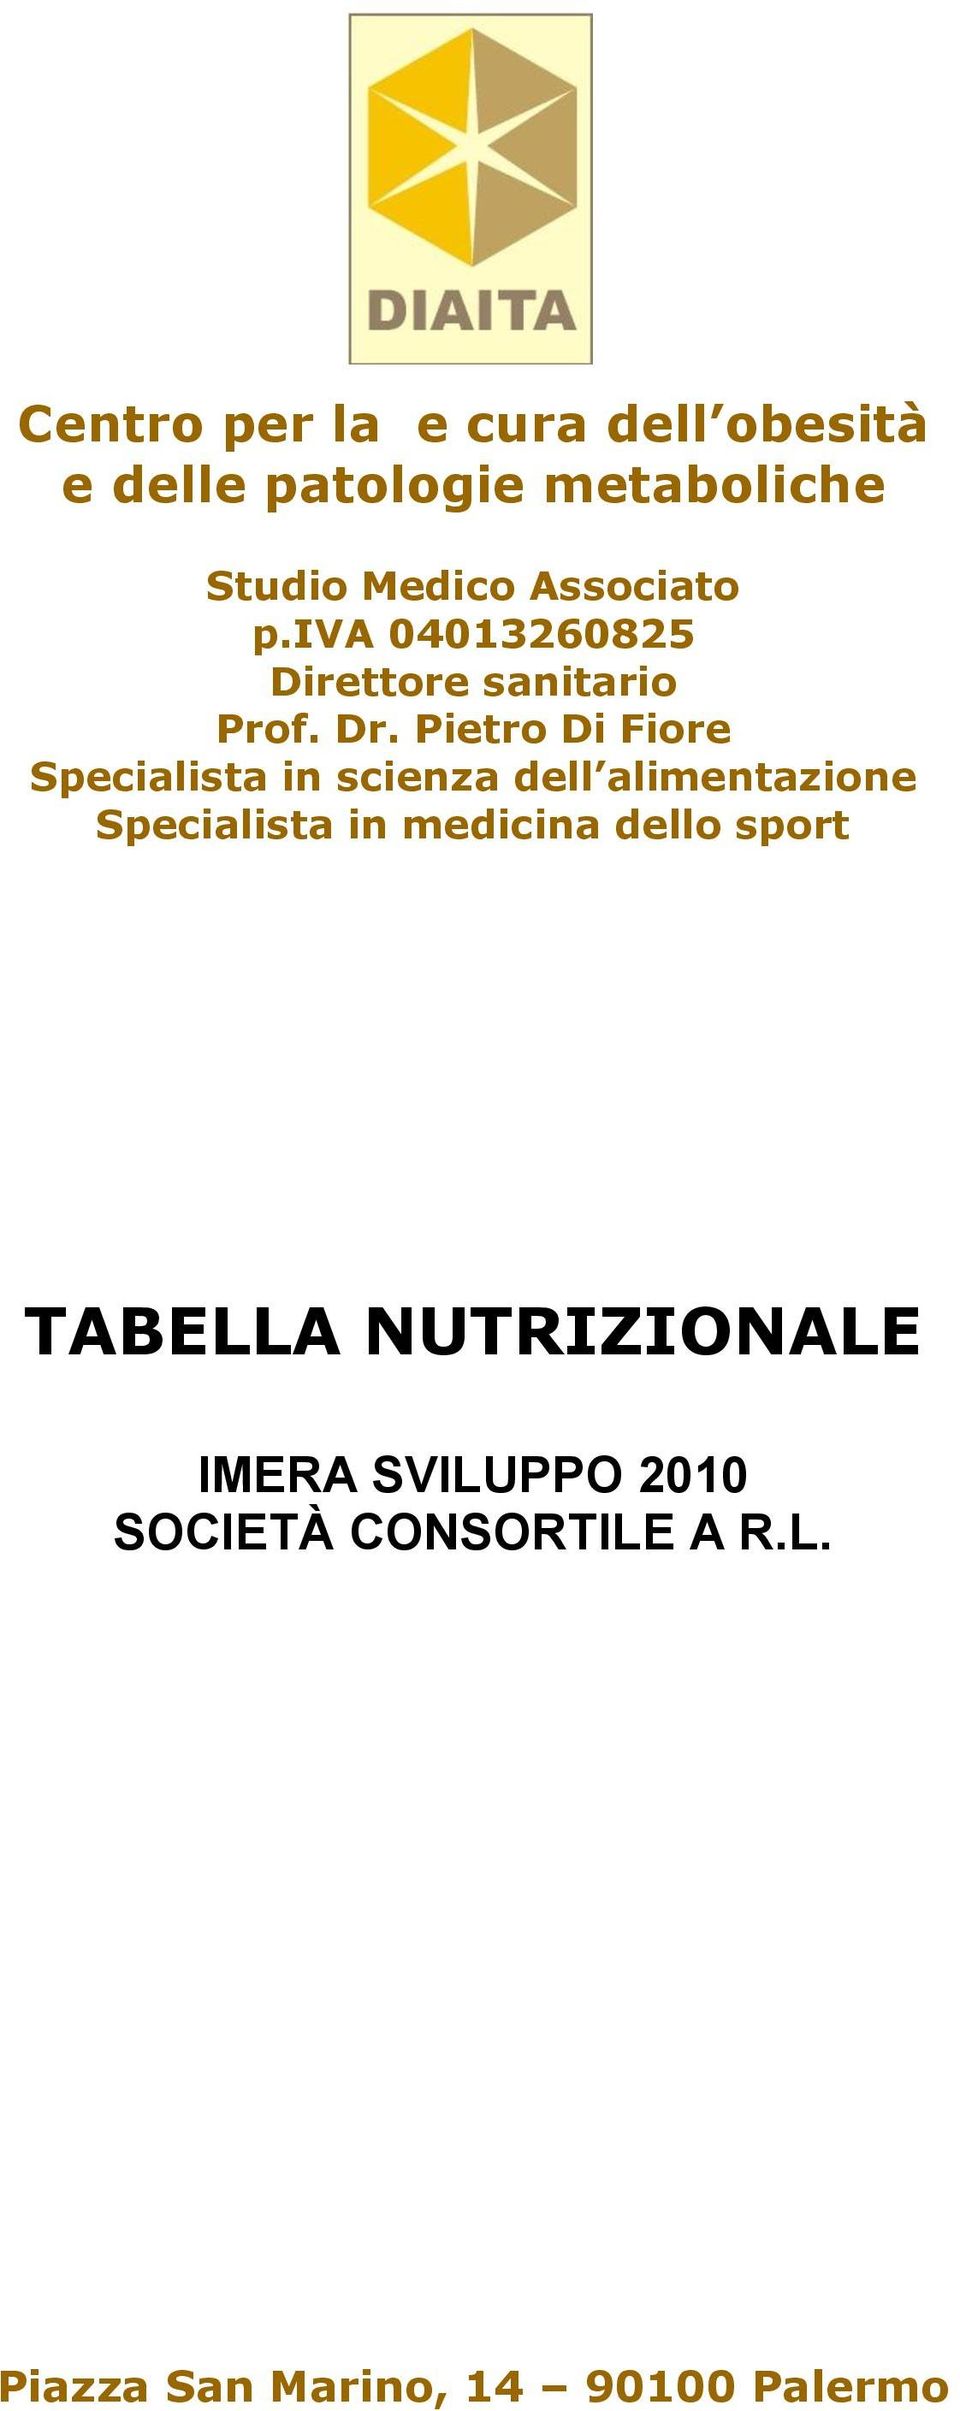 Pietro Di Fiore Specialista in scienza dell alimentazione Specialista in